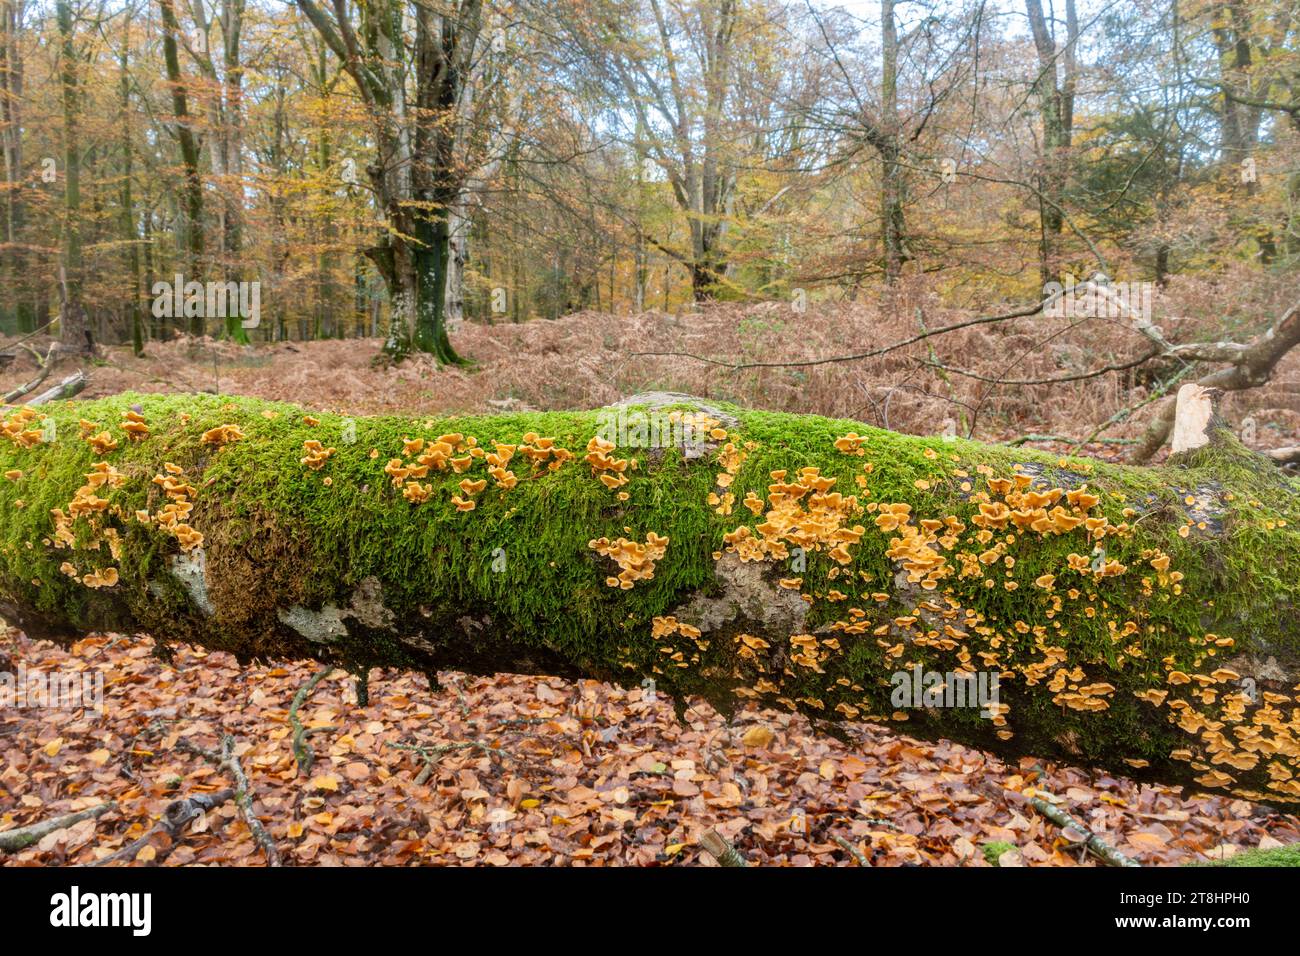 Champignons des bois en automne à Bolderwood dans le parc national de New Forest, Hampshire, Angleterre, Royaume-Uni Banque D'Images